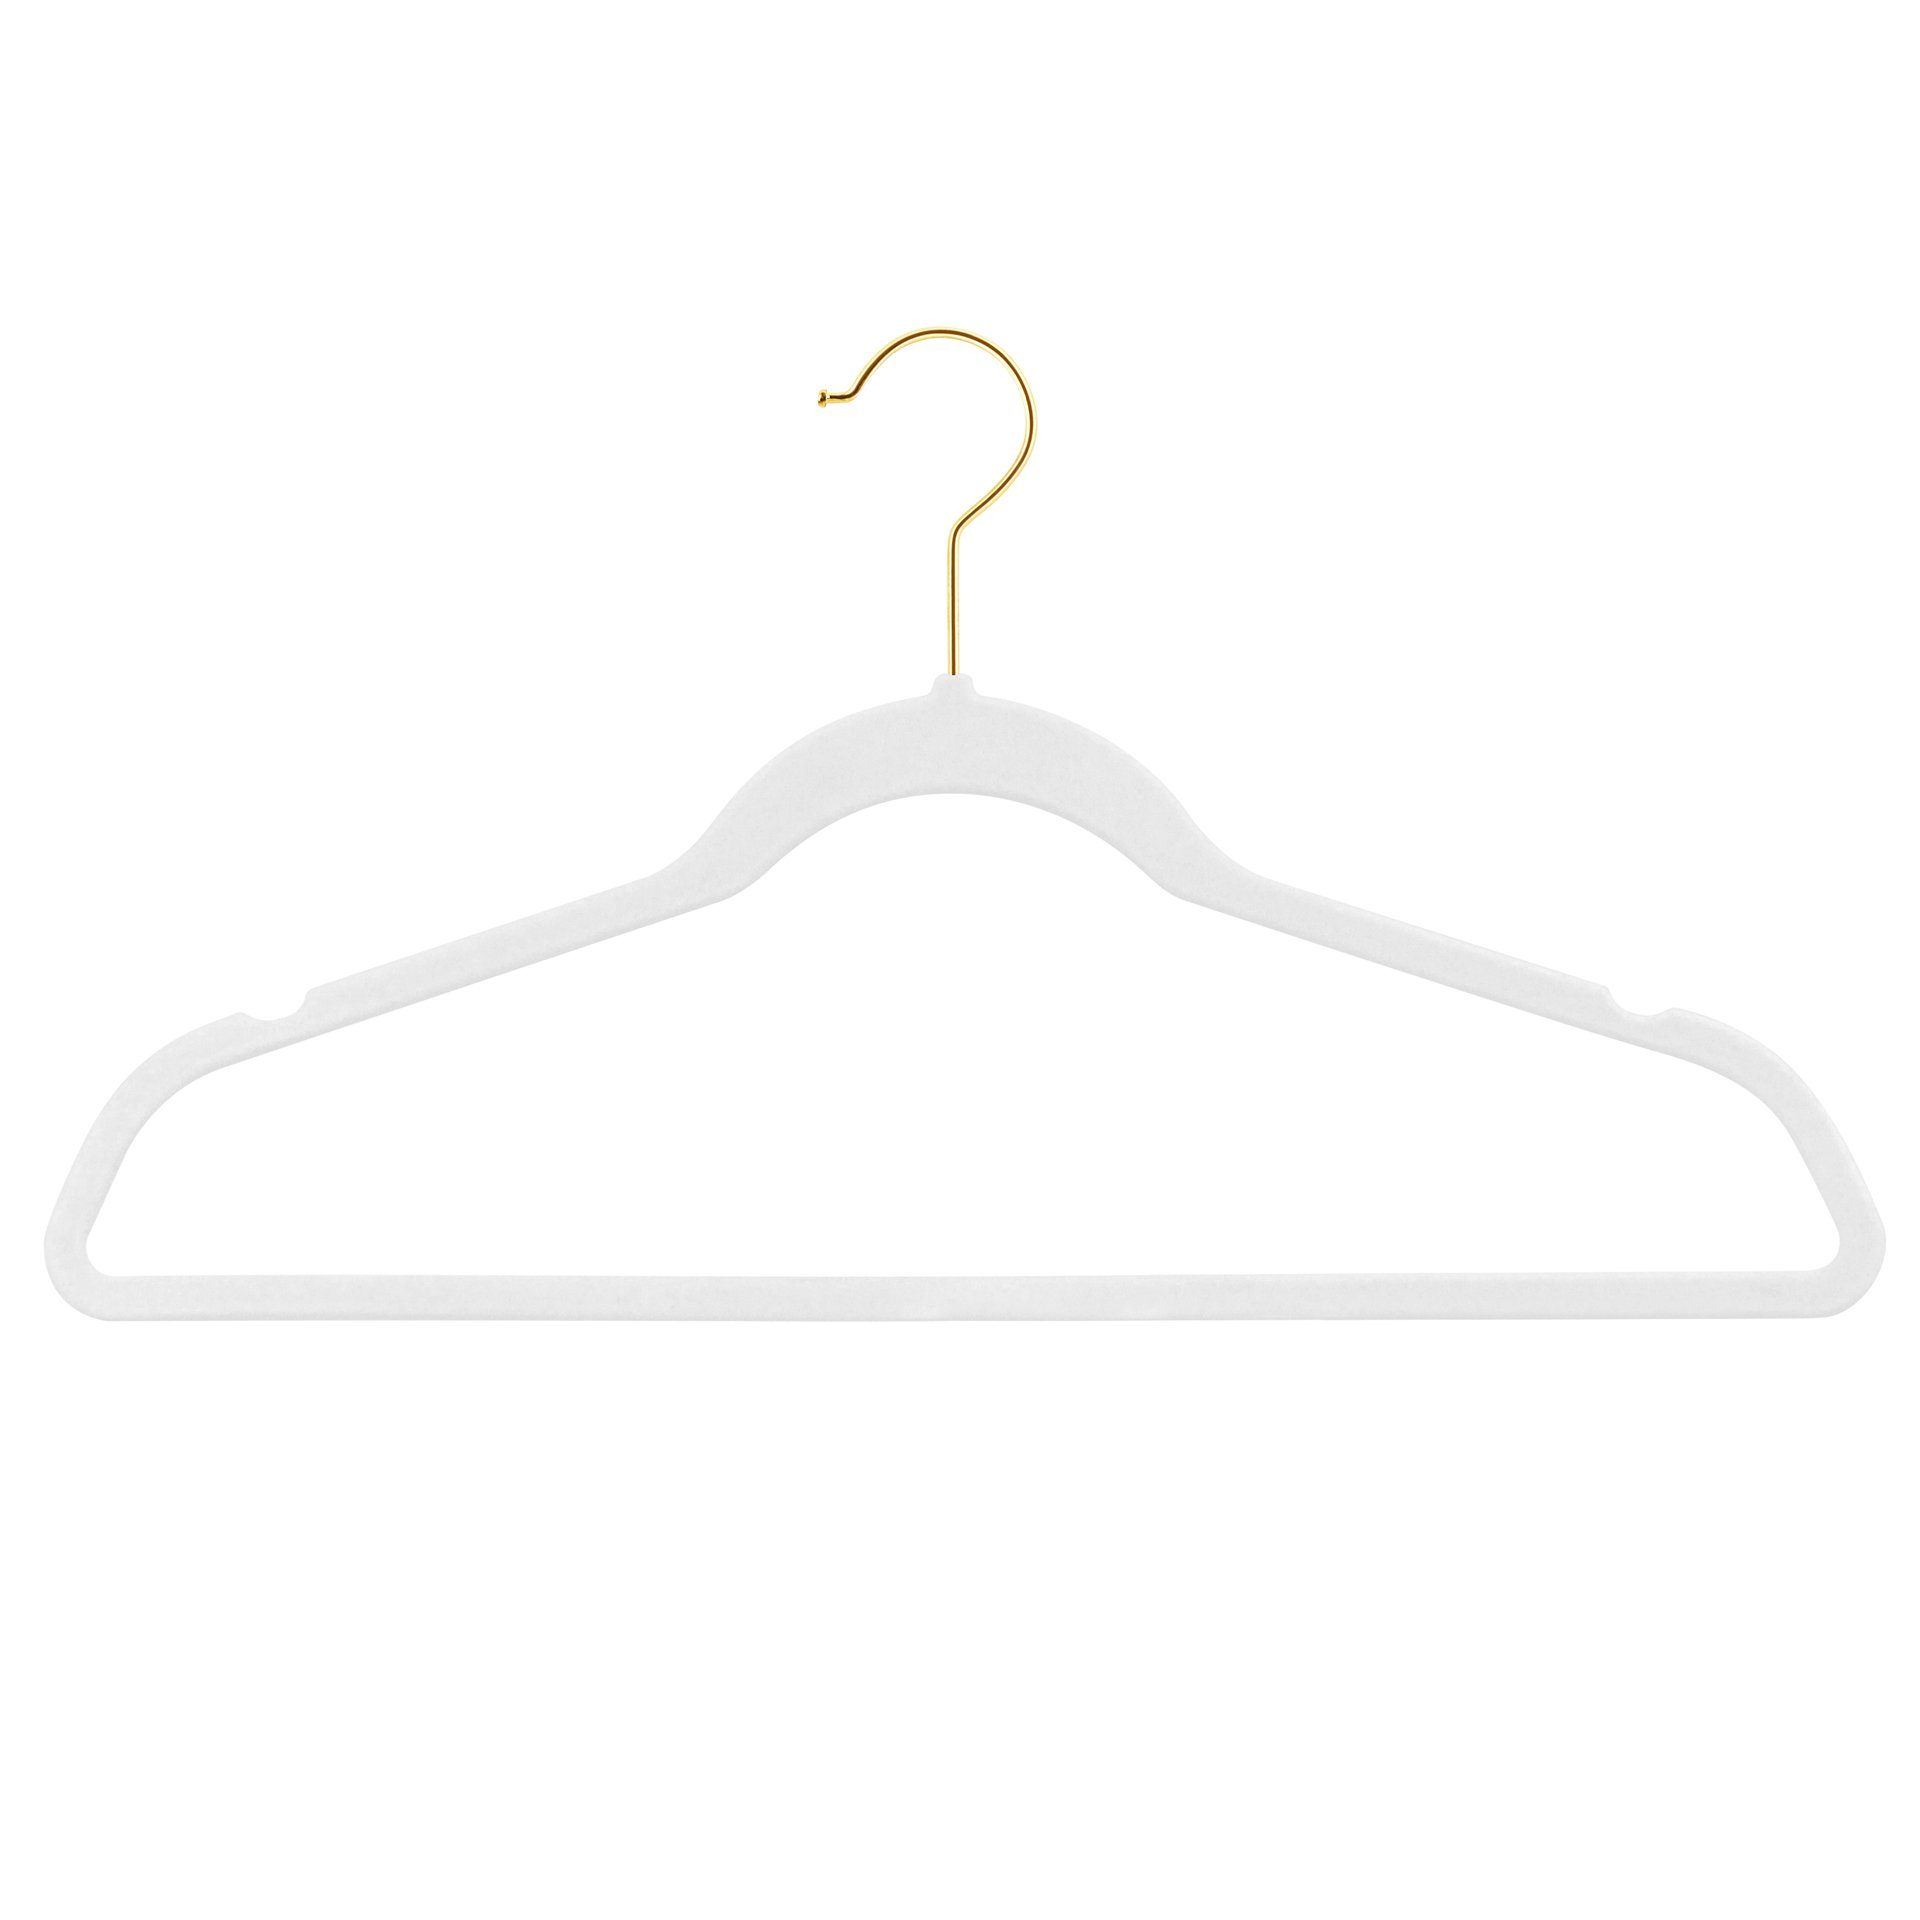 StickandShine Kleiderbügel Samt verschiedenen Haken verschiedenen Farben mit zur Bügel Weiß) Kleiderbügel Rosegold, Zink Schwarz, Farben moderne Wahl (Gold, Silber, luxus